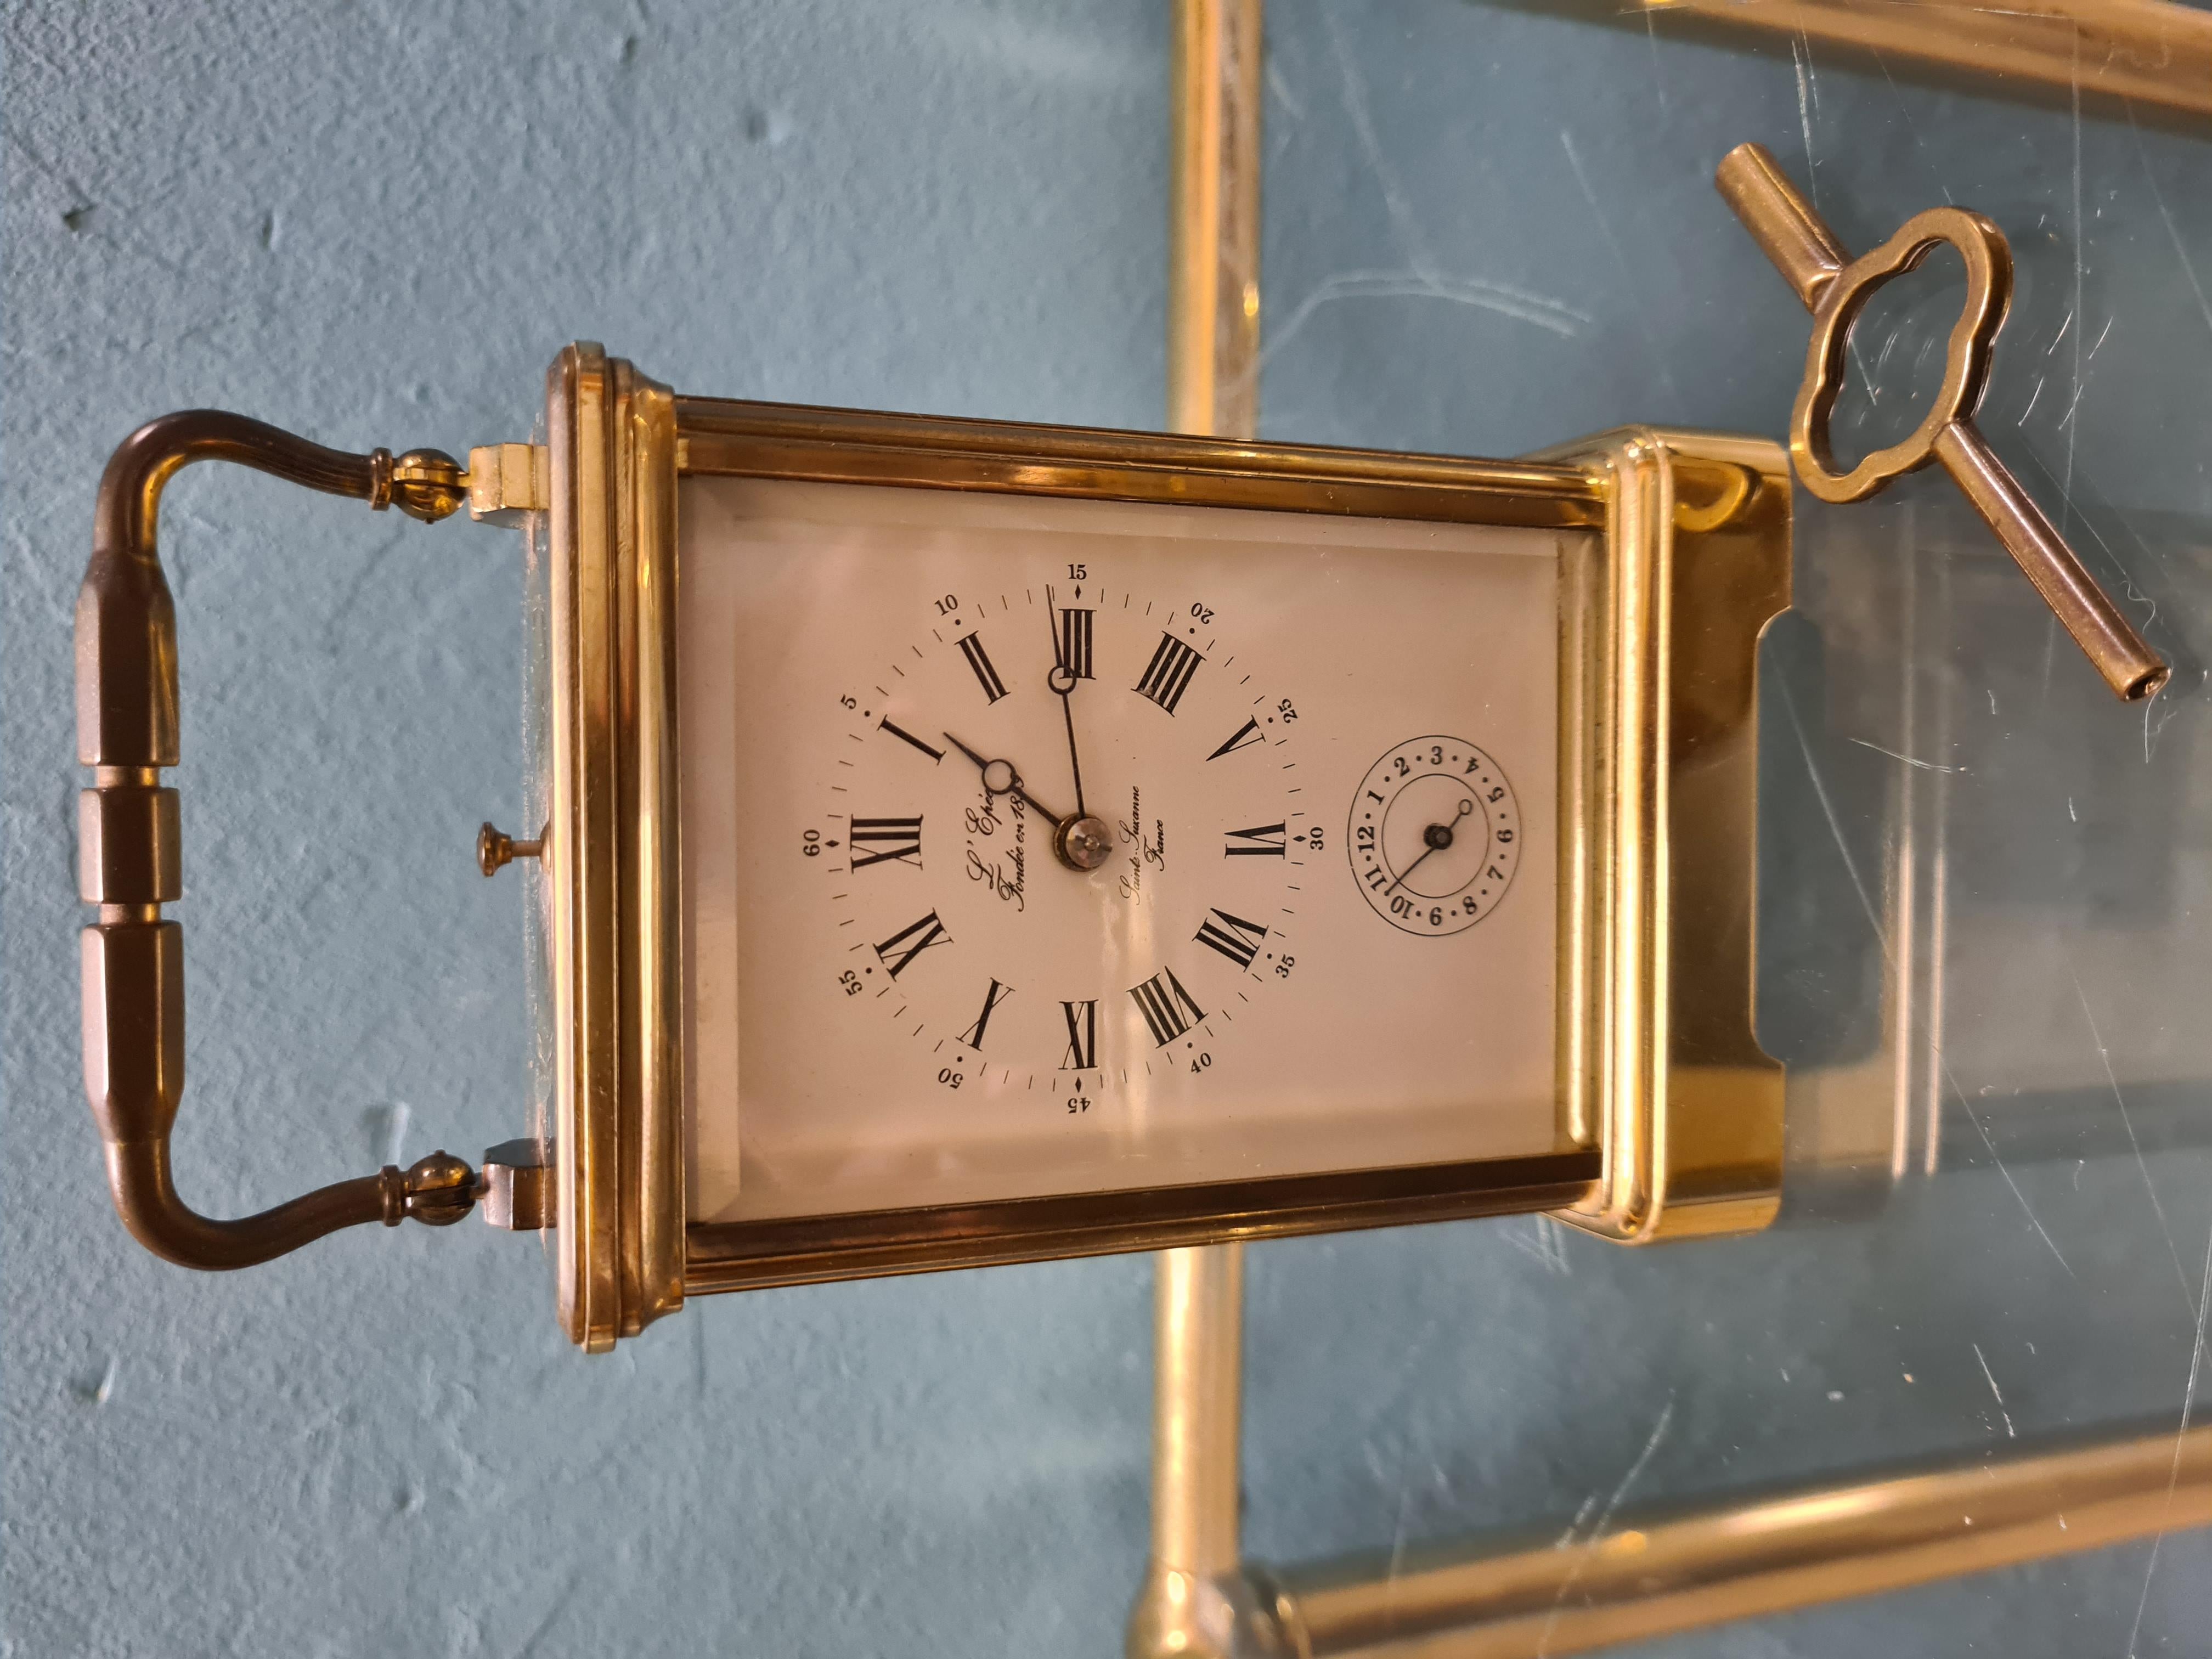 Raro orologio da viaggio con suoneria realizzato dalla ditta Francese L'Epèe 1839.

Raffinato orologio da carrozza con cassa in ottone e vetro.

Il movimento e gli ingranaggi dell'orologio sono a vista.

Presenta un quadrante bianco con numeri